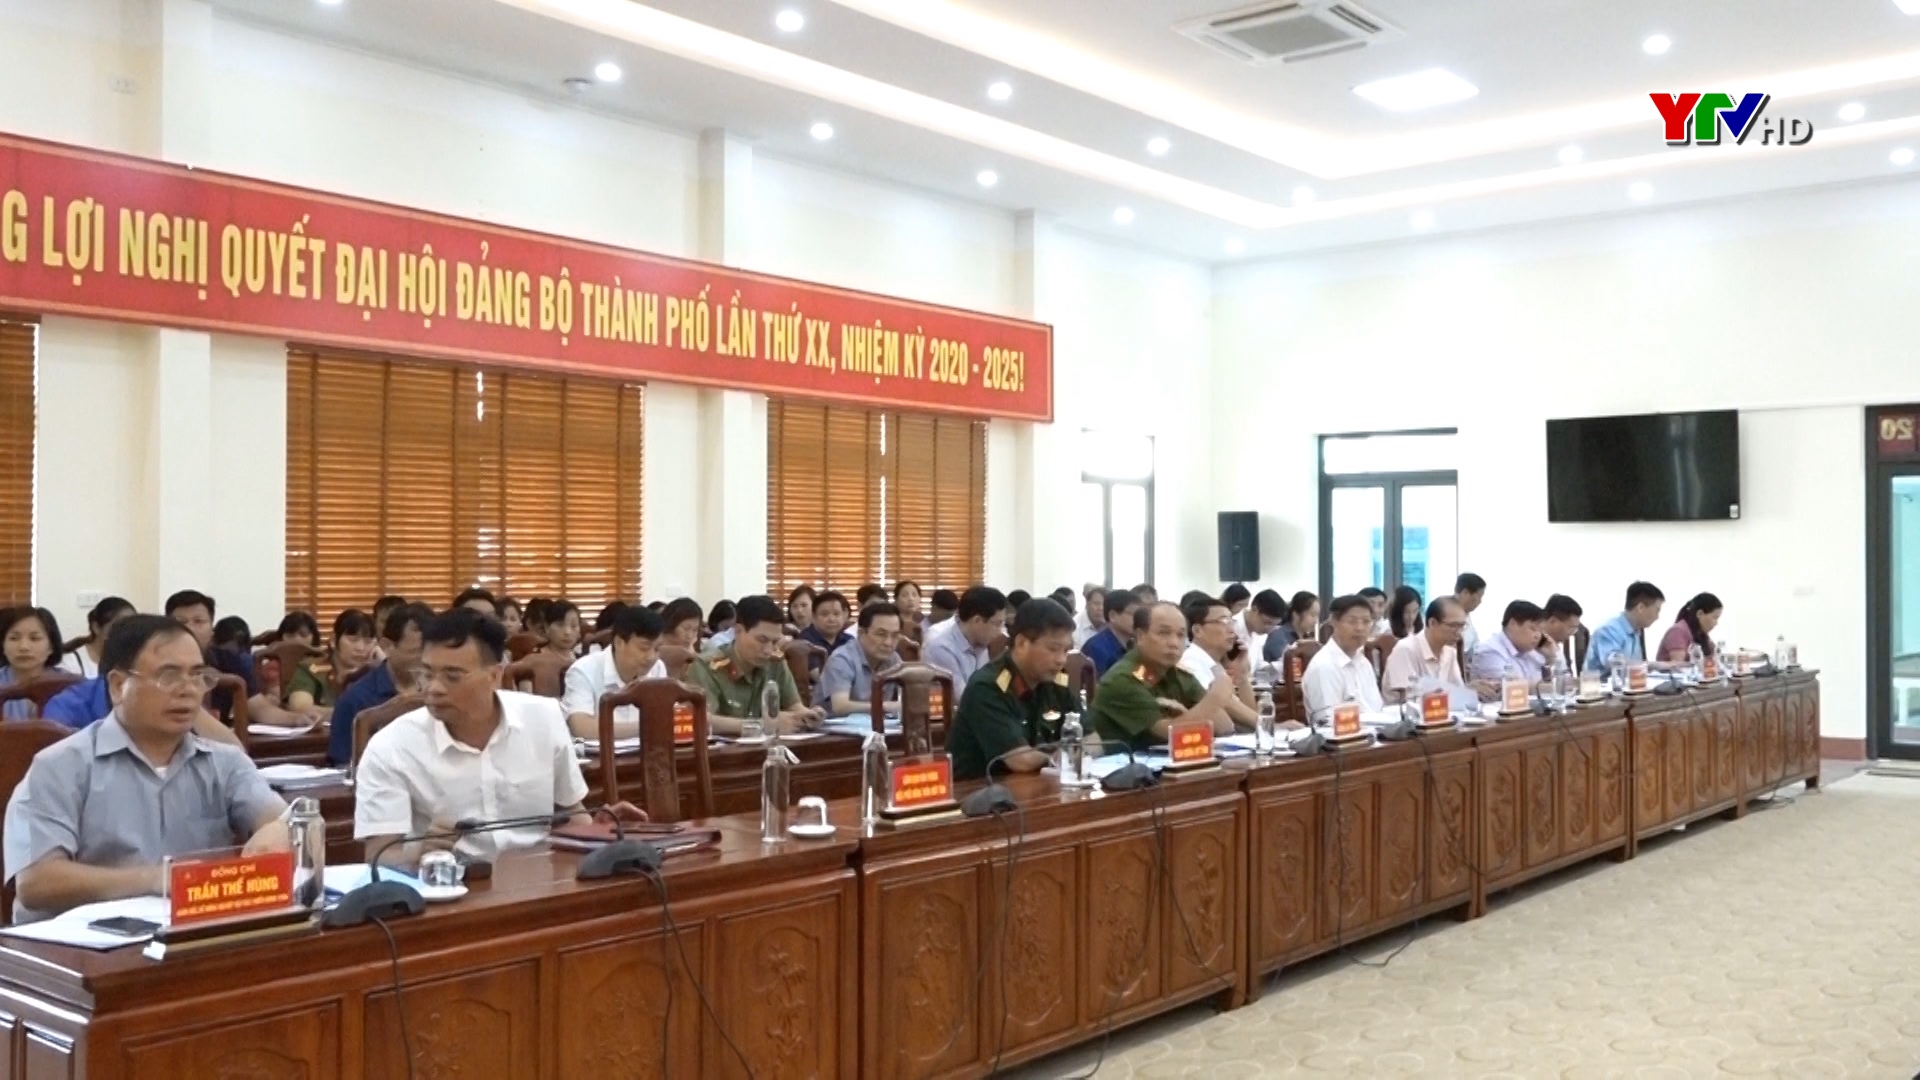 Hội nghị thẩm định xét công nhận xã Tuy Lộc, Minh Bảo, Âu Lâu – TP Yên Bái đạt chuẩn nông thôn mới nâng cao năm 2020